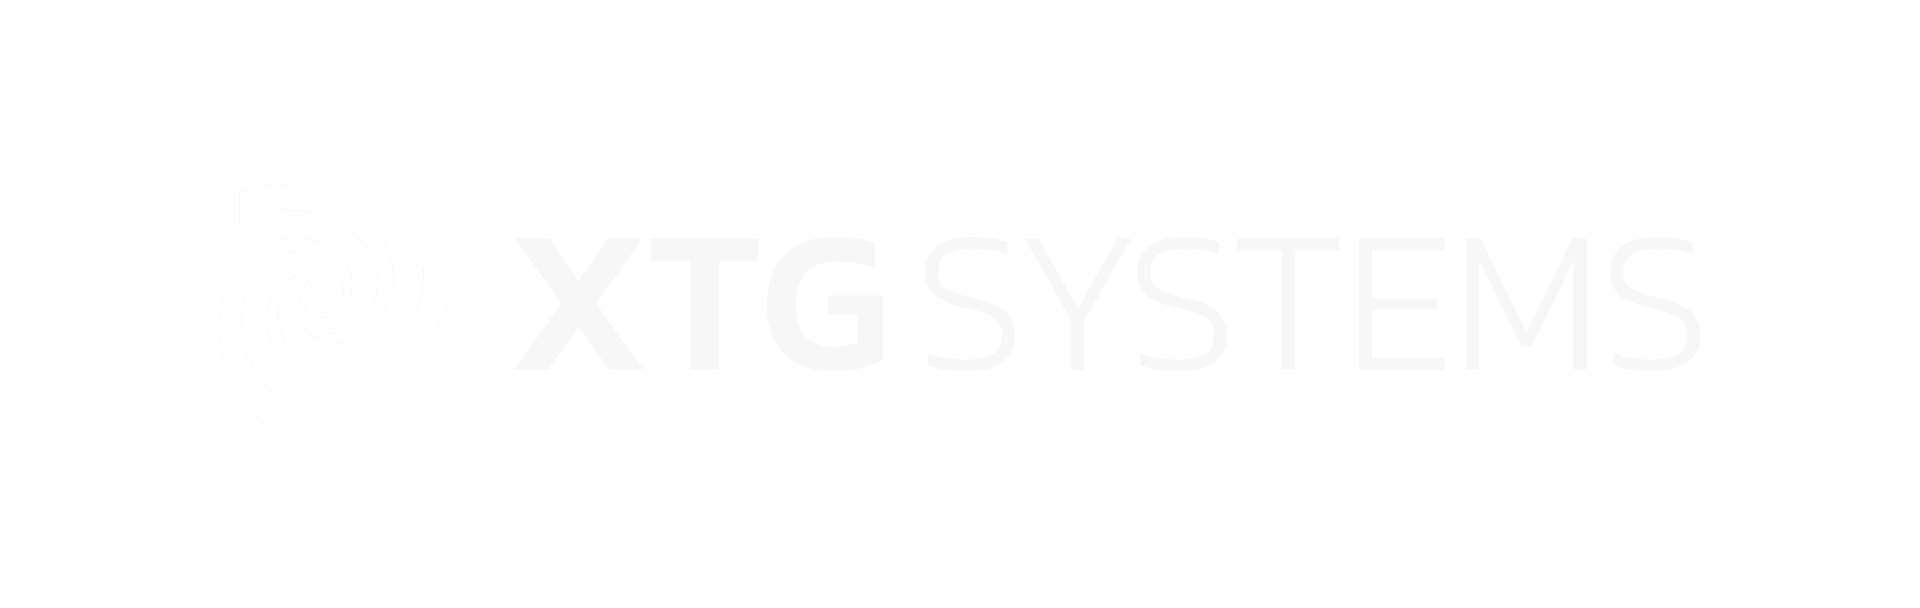 XTG Systems